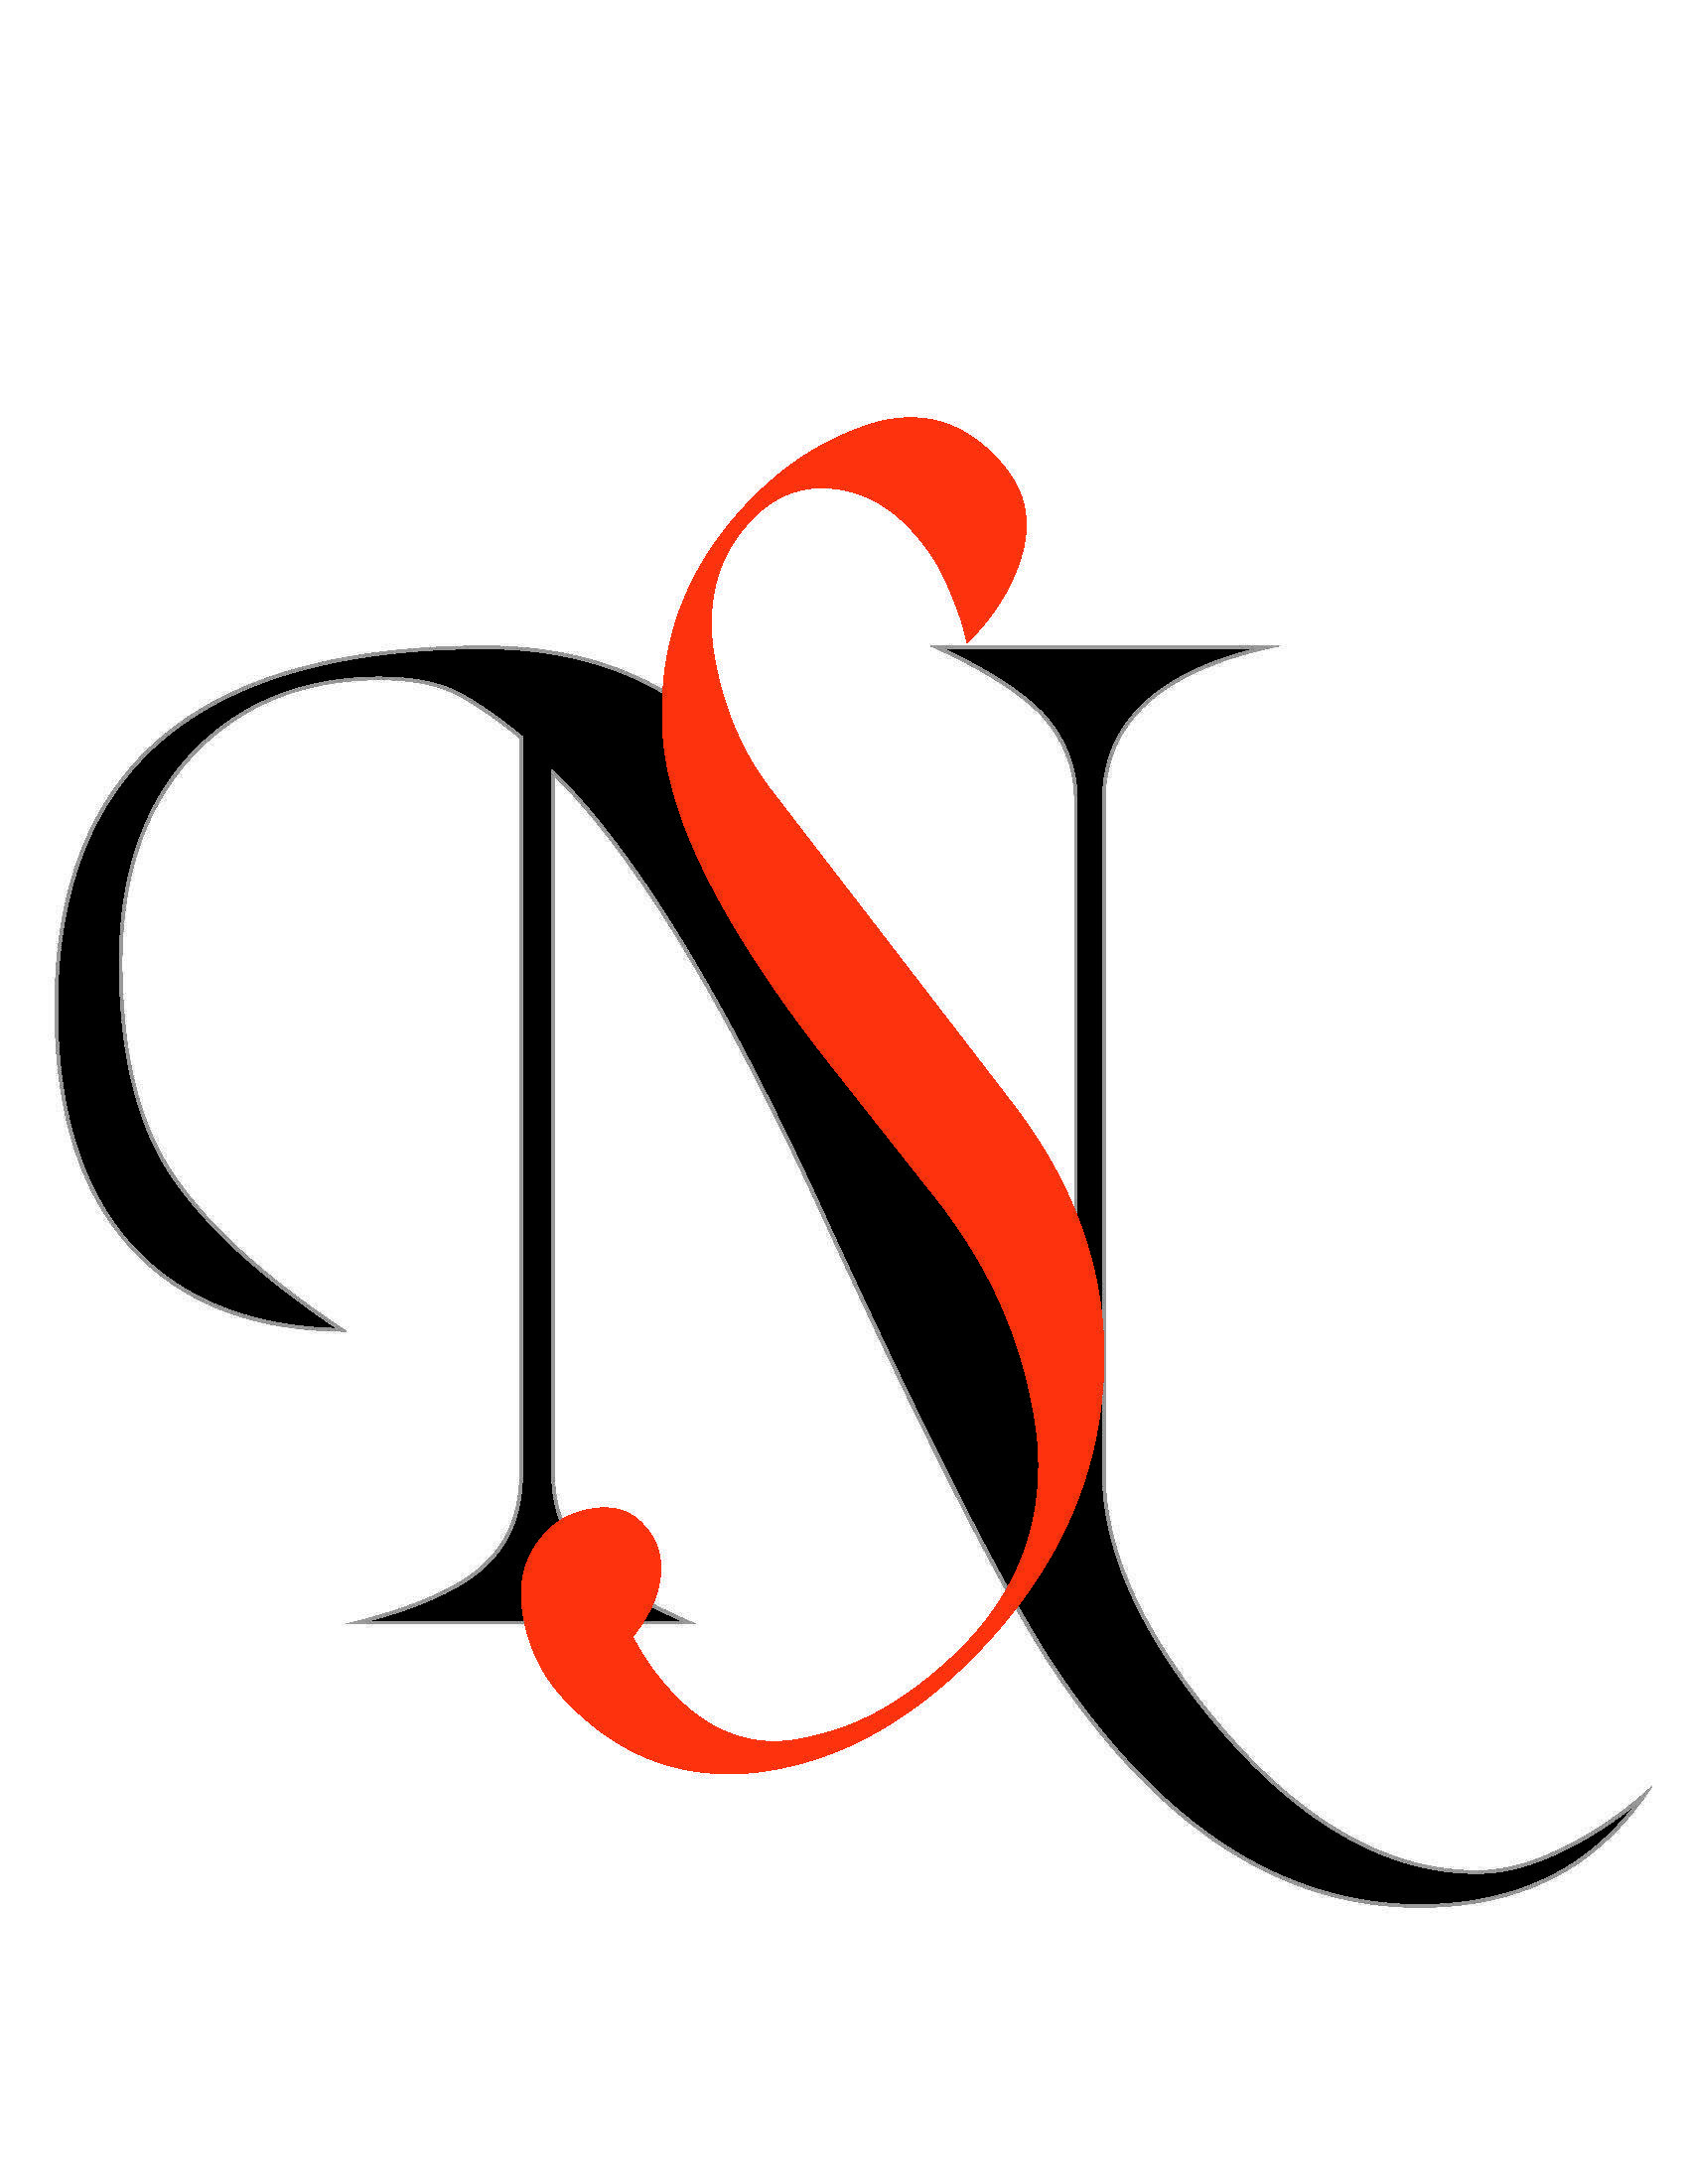 SN Logo - monogram sn. Logo design, Monogram, Logos